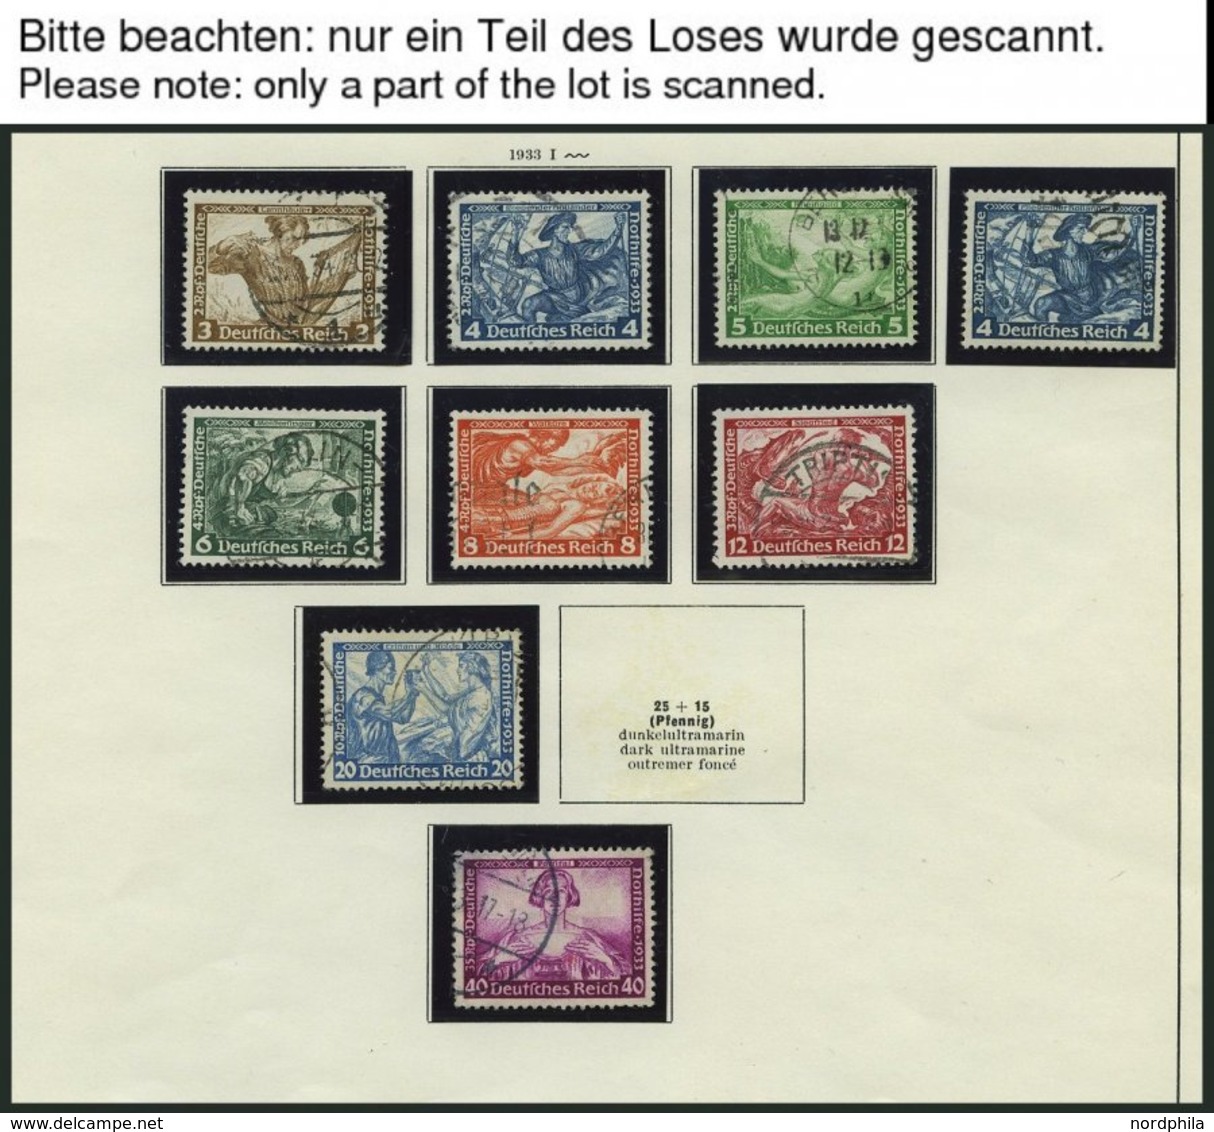 SAMMLUNGEN O, Saubere Gestempelte Sammlung Dt. Reich Von 1933-45 Im Schaubek Album Mit Guten Mittleren Ausgaben, U.a. Mi - Usados